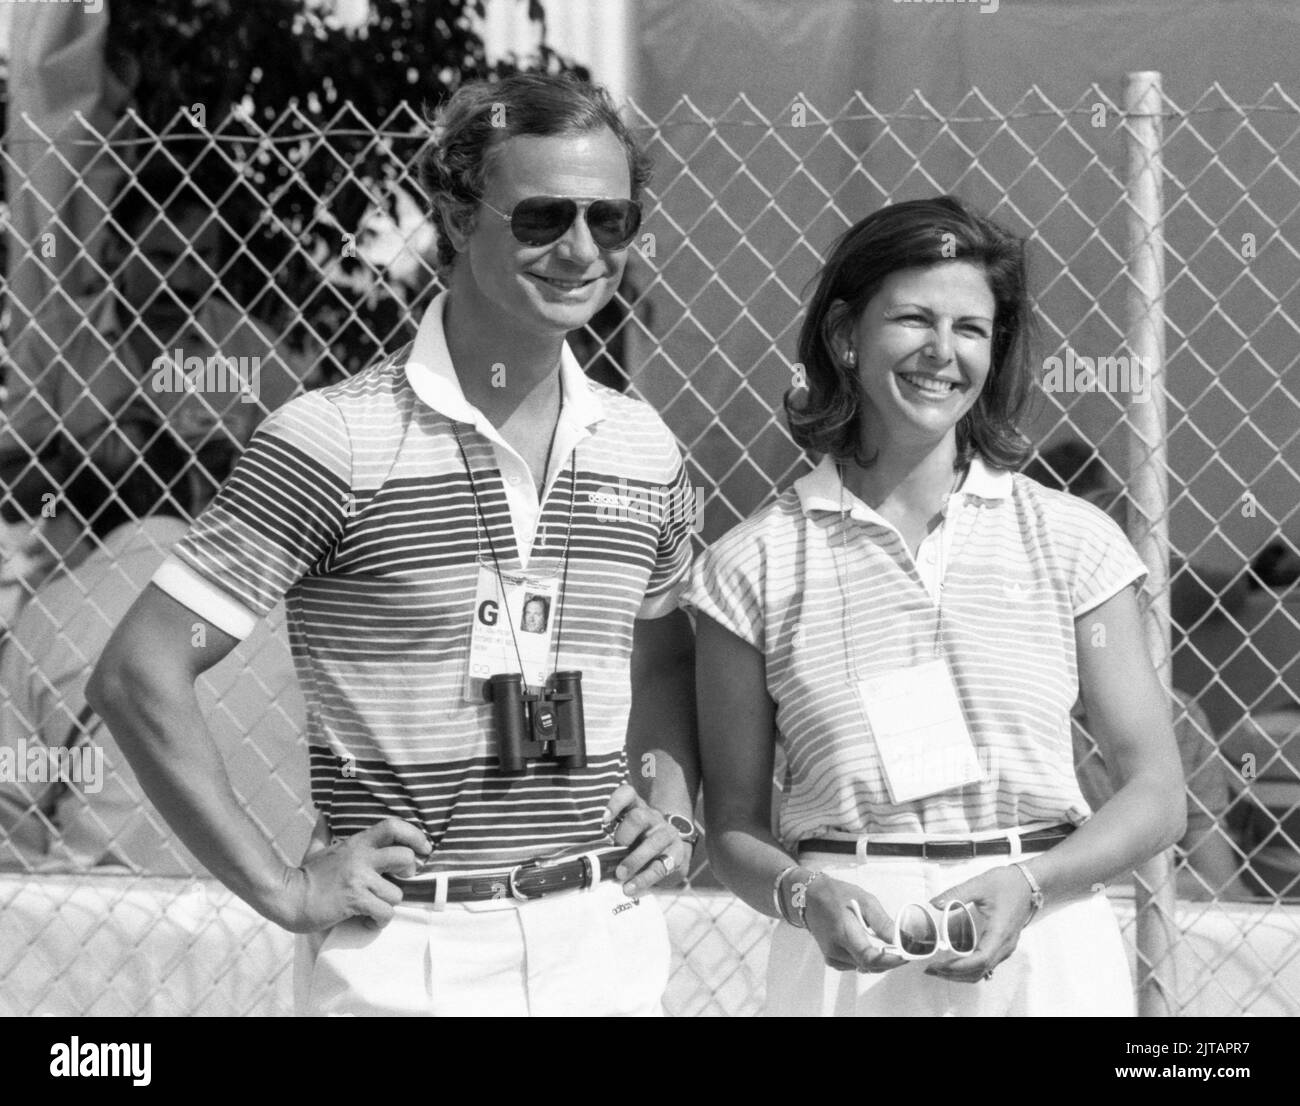 JUEGOS OLÍMPICOS DE VERANO EN LOS ANGELES 1984SWEDISH PAREJA REAL en el estadio Canoe para animar a los atletas suecos éxito Foto de stock